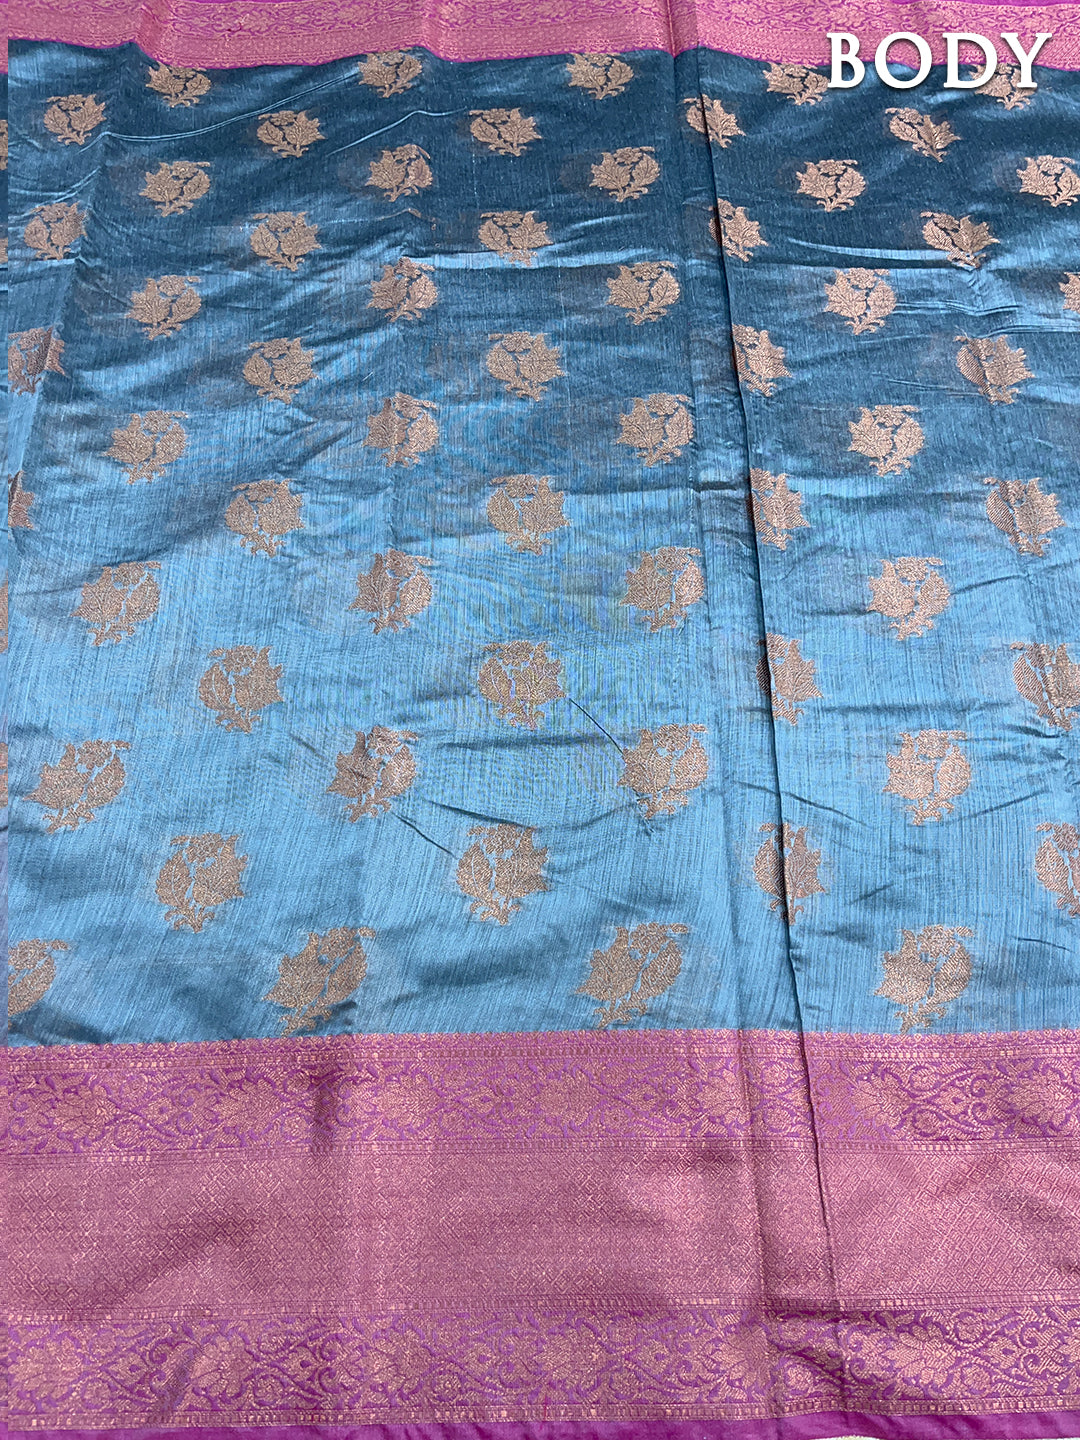 Dual color of blue banarasi chanderi cotton saree